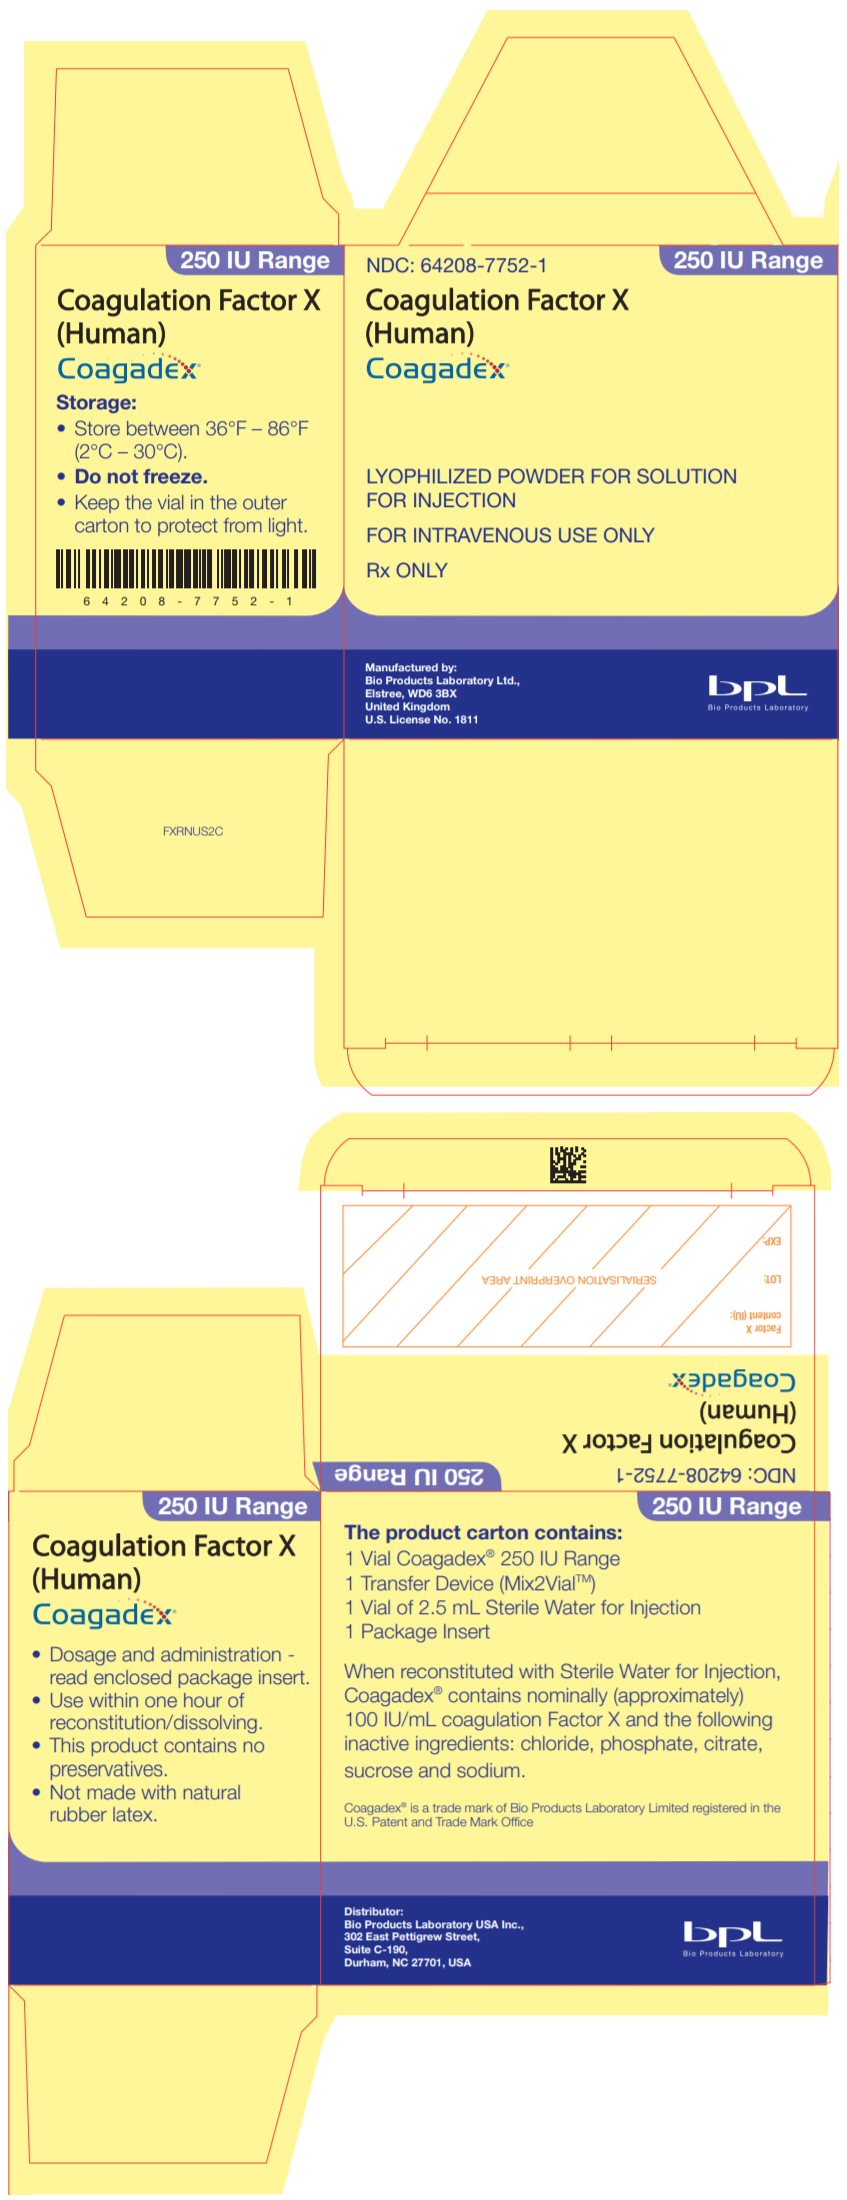 PRINCIPAL DISPLAY PANEL - 250 IU Kit Carton